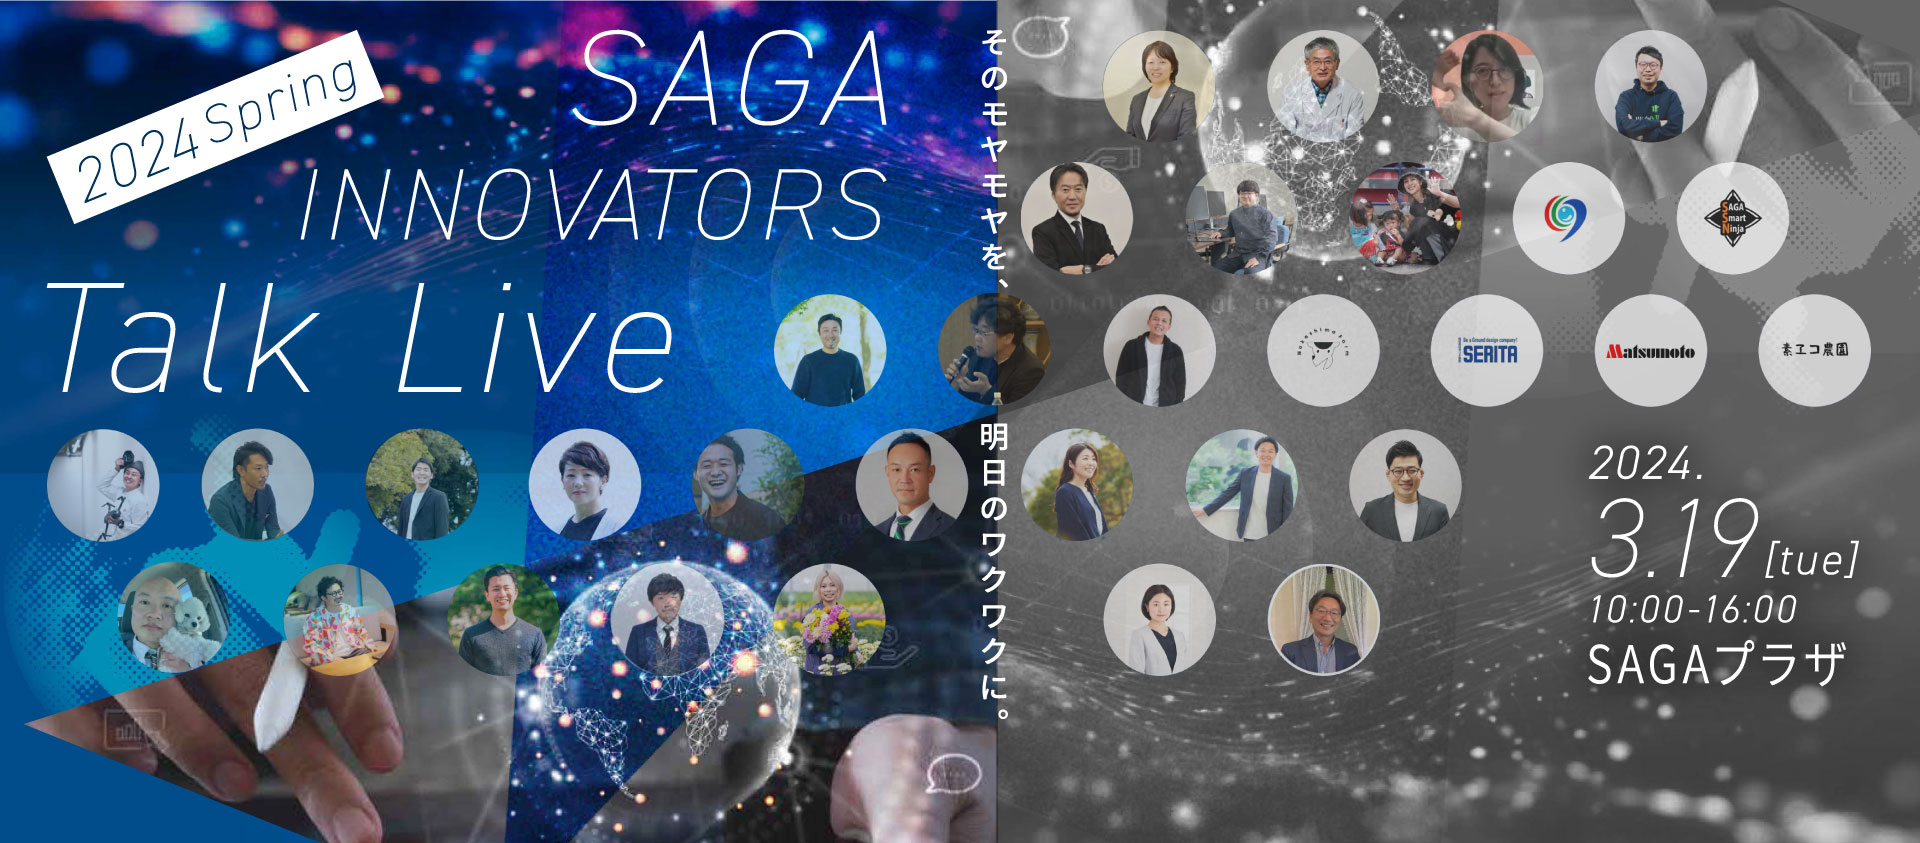 【登壇者情報はLPで】“そのモヤモヤを、明日のワクワクに”　新進気鋭のイノベーターが集うトークライブを開催︕  「SAGA INNOVATORS TALK LIVE 2024 Spring」